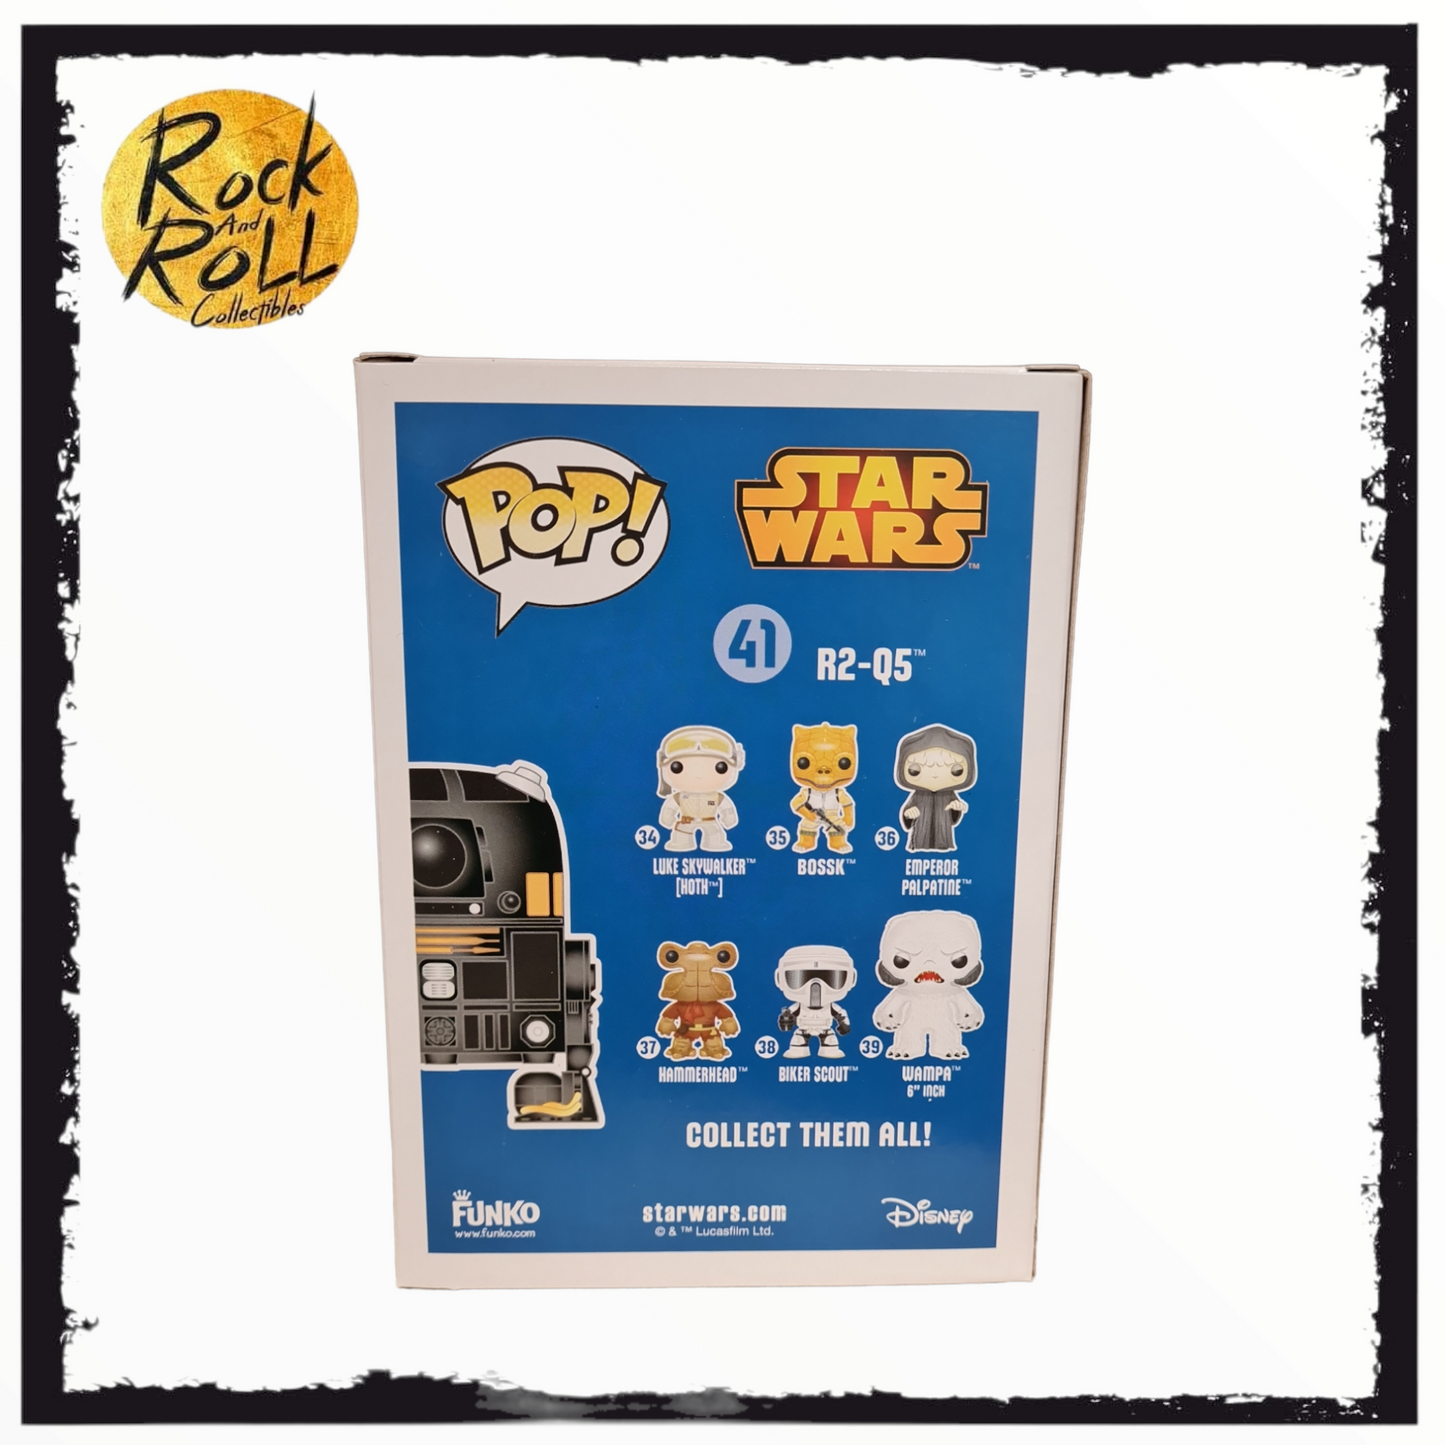 Star Wars - R2-Q5 Funko Pop! #41 Underground Toys Exclusive